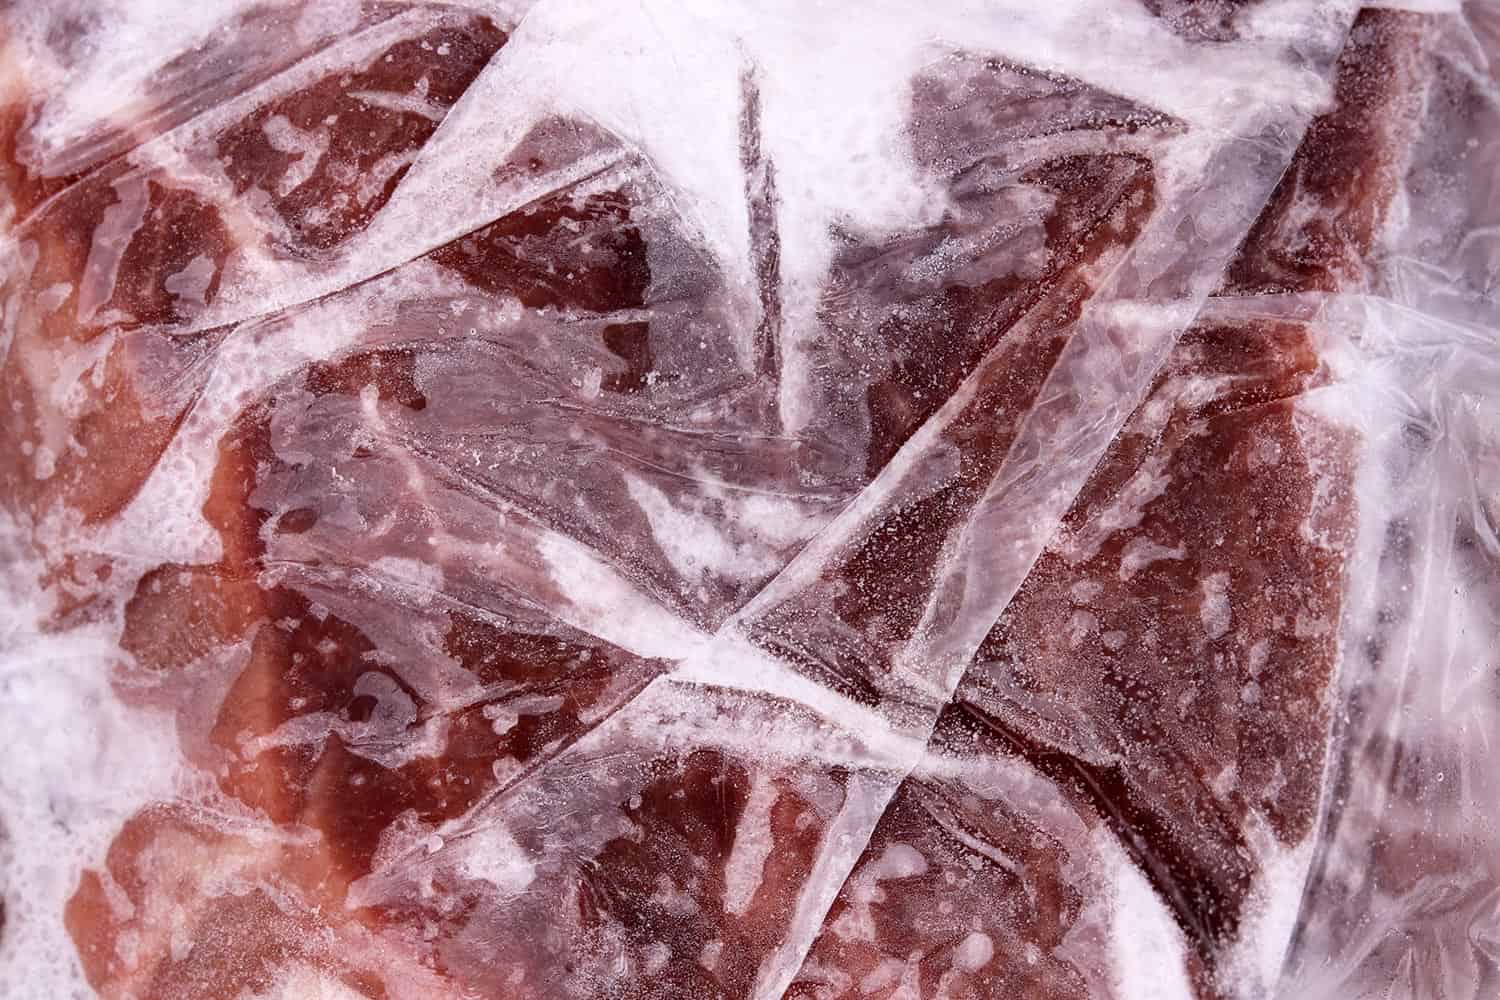 Frozen meat in a plastic bag